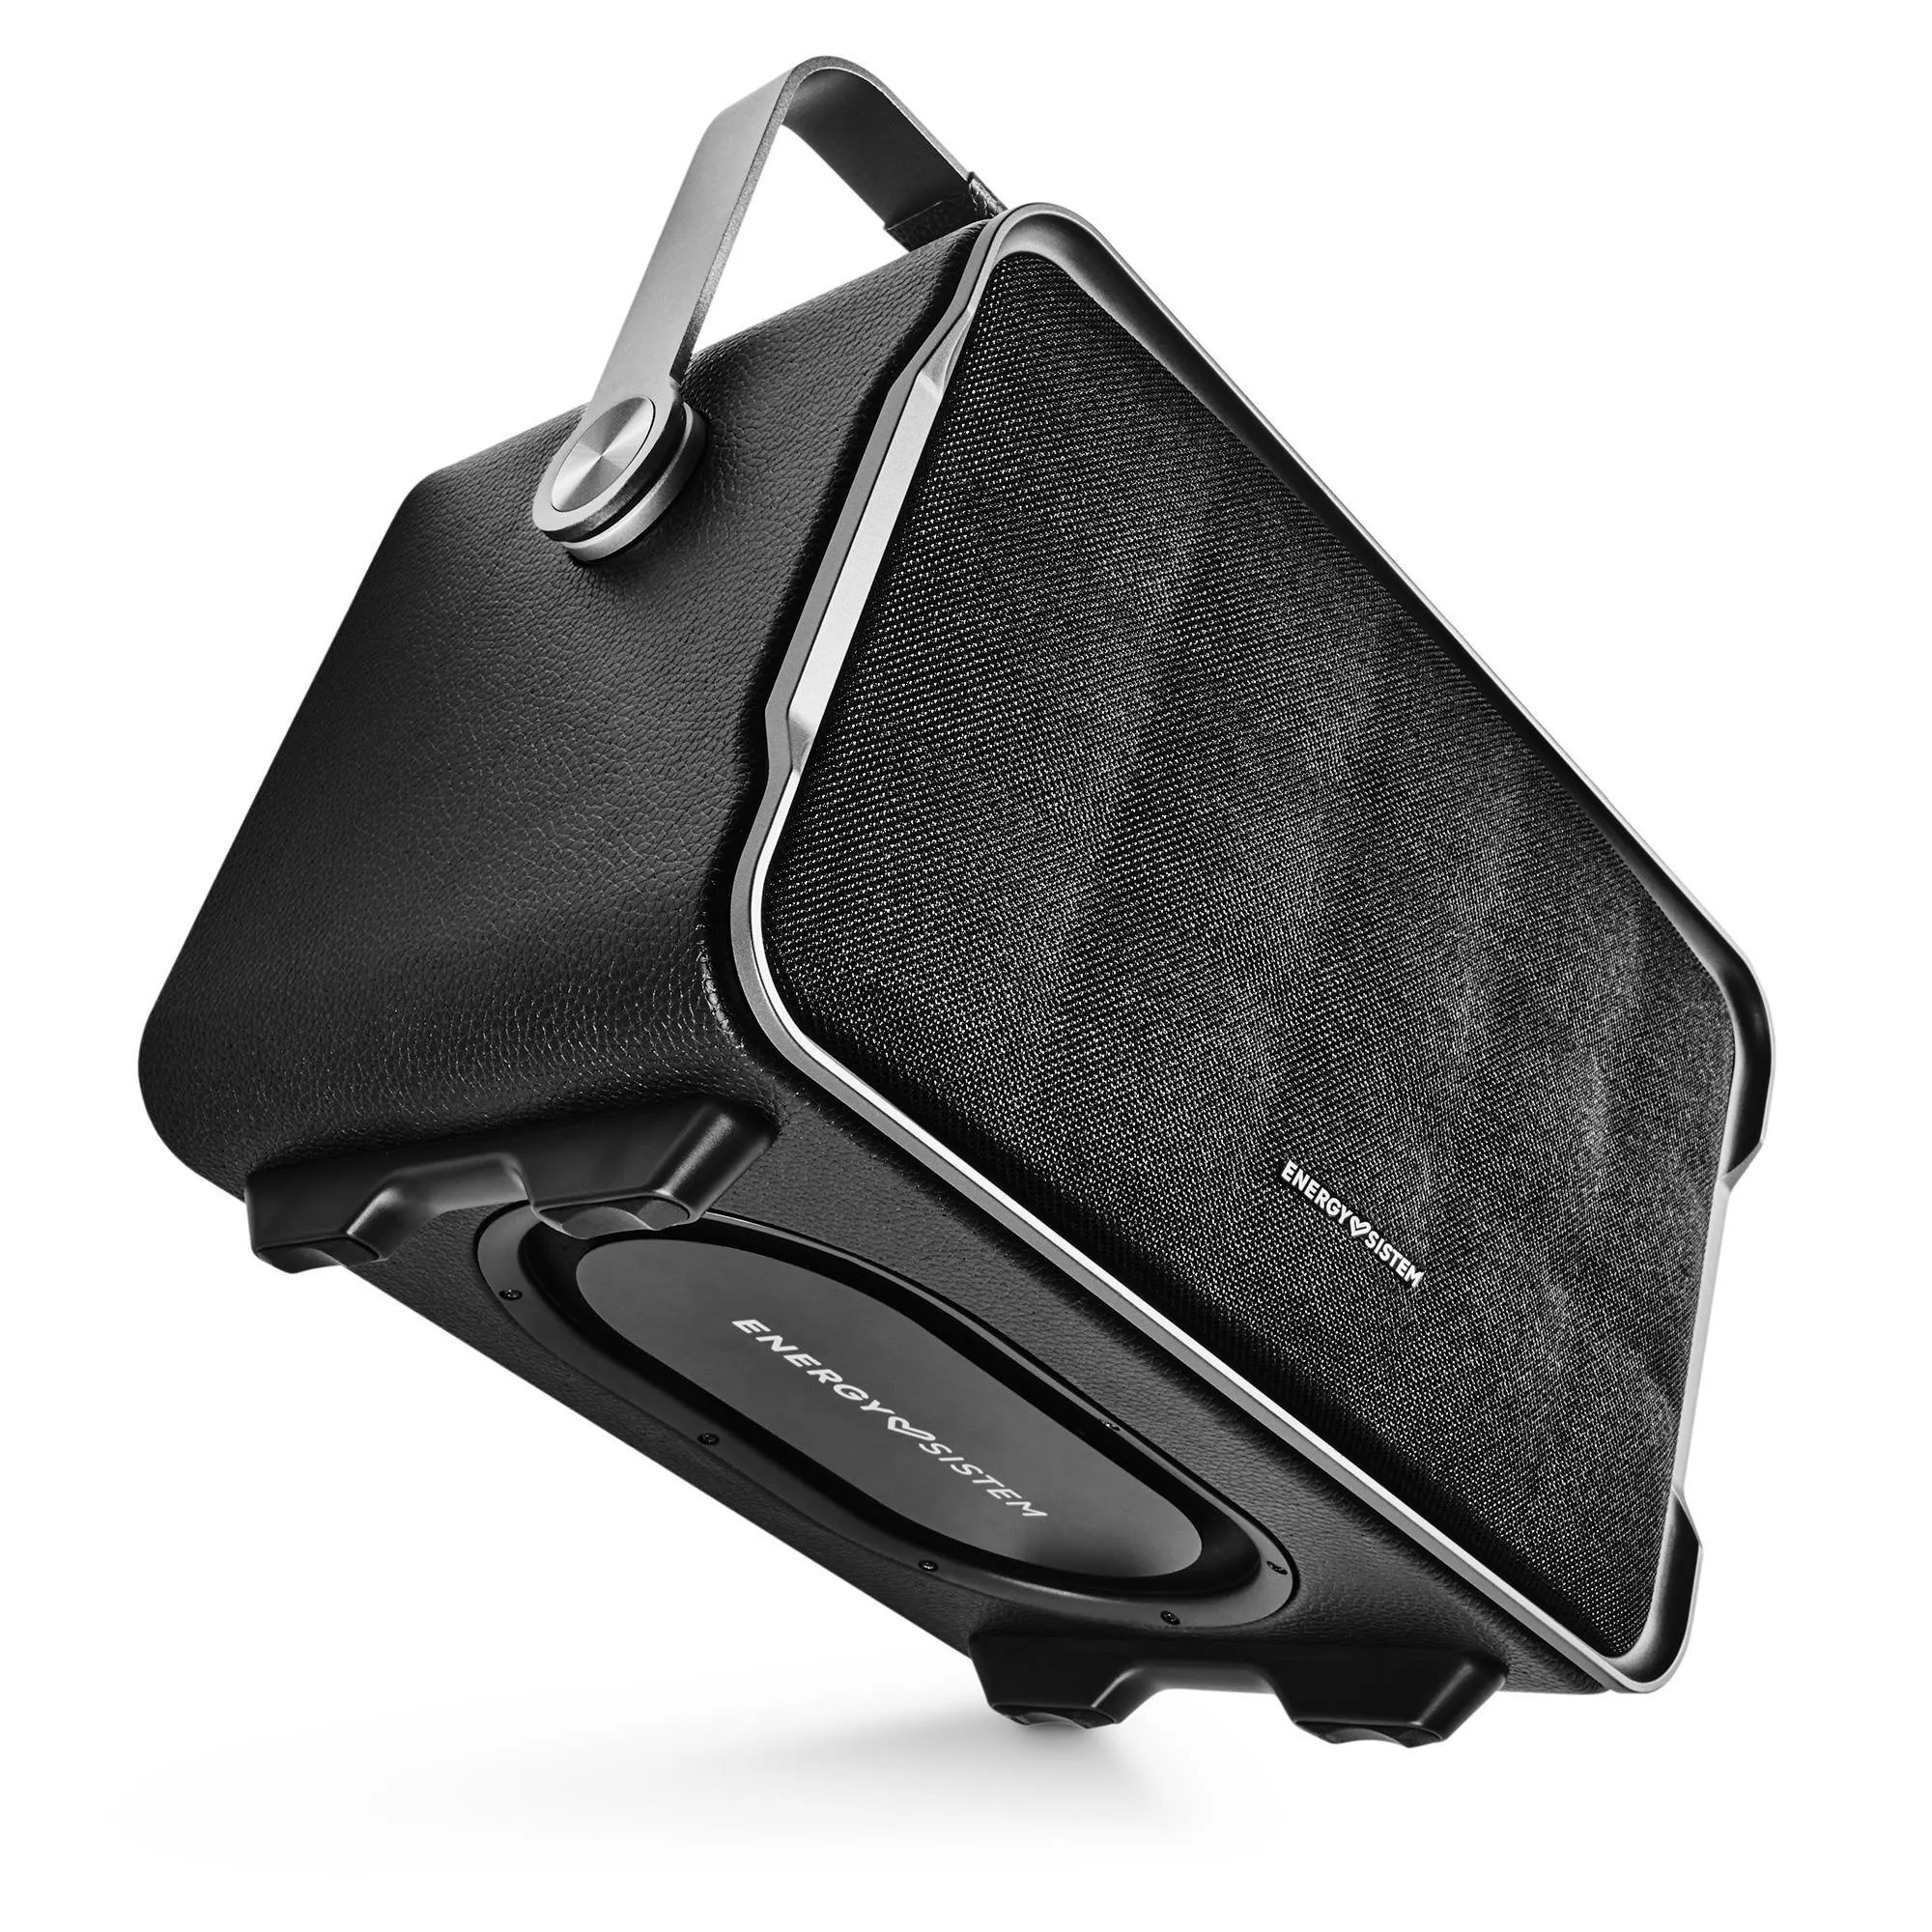 L'enceinte portable Classy est dotée d'une poignée pliable pour un transport facile et confortable